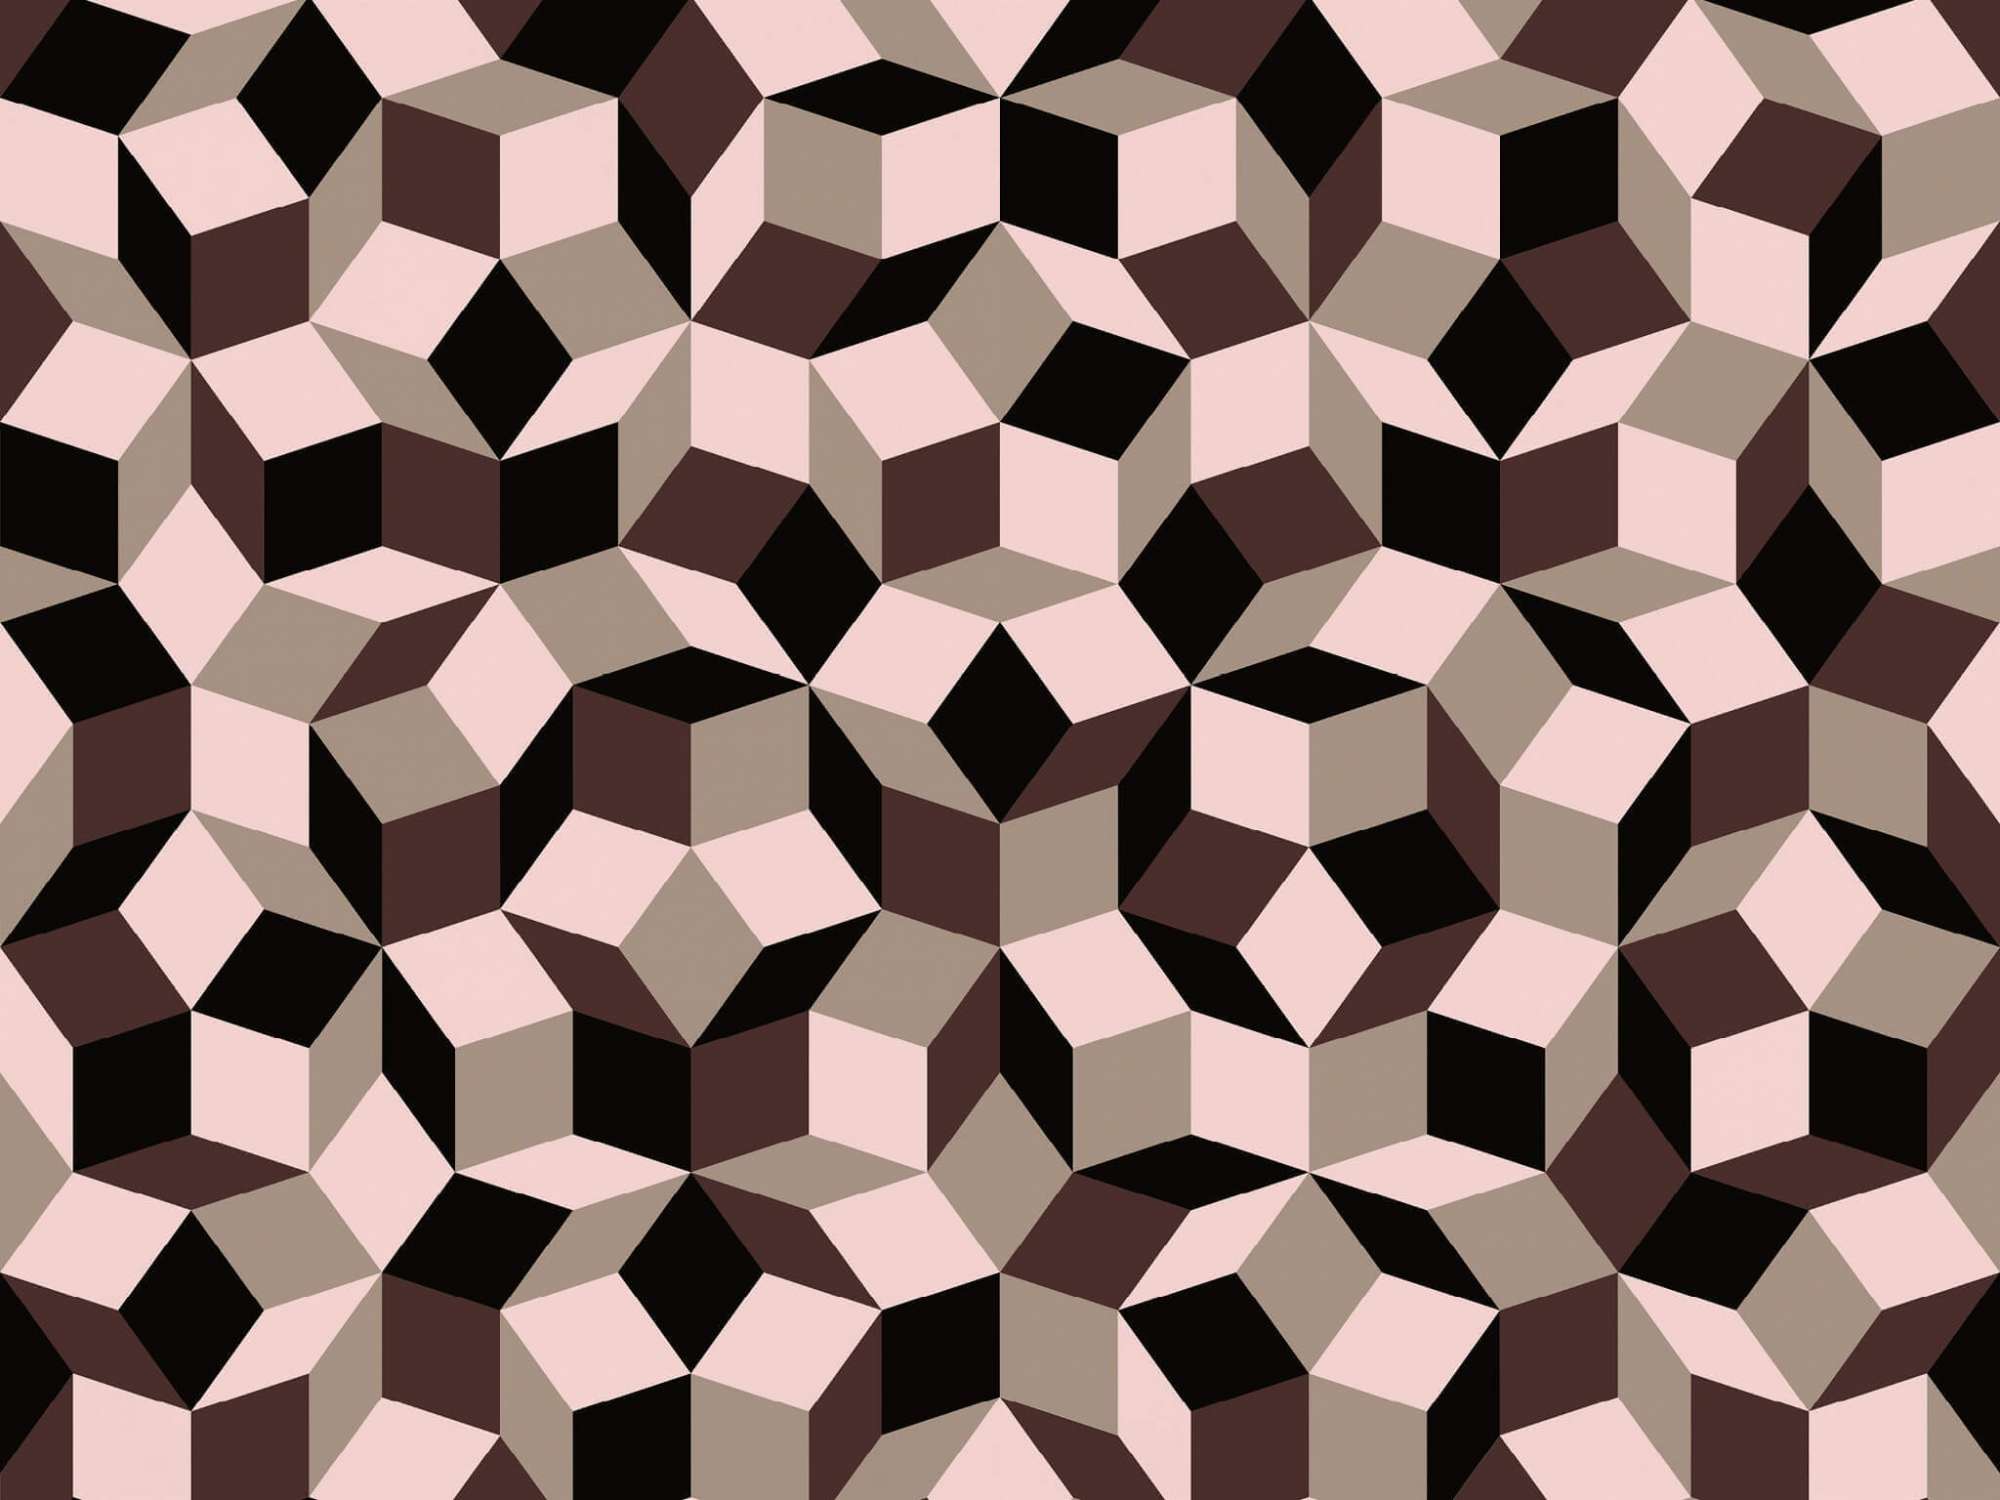 Zoom du papier peint motif géométrique penrose, Penrose Ice Cream, collection Penrose, design IchetKar